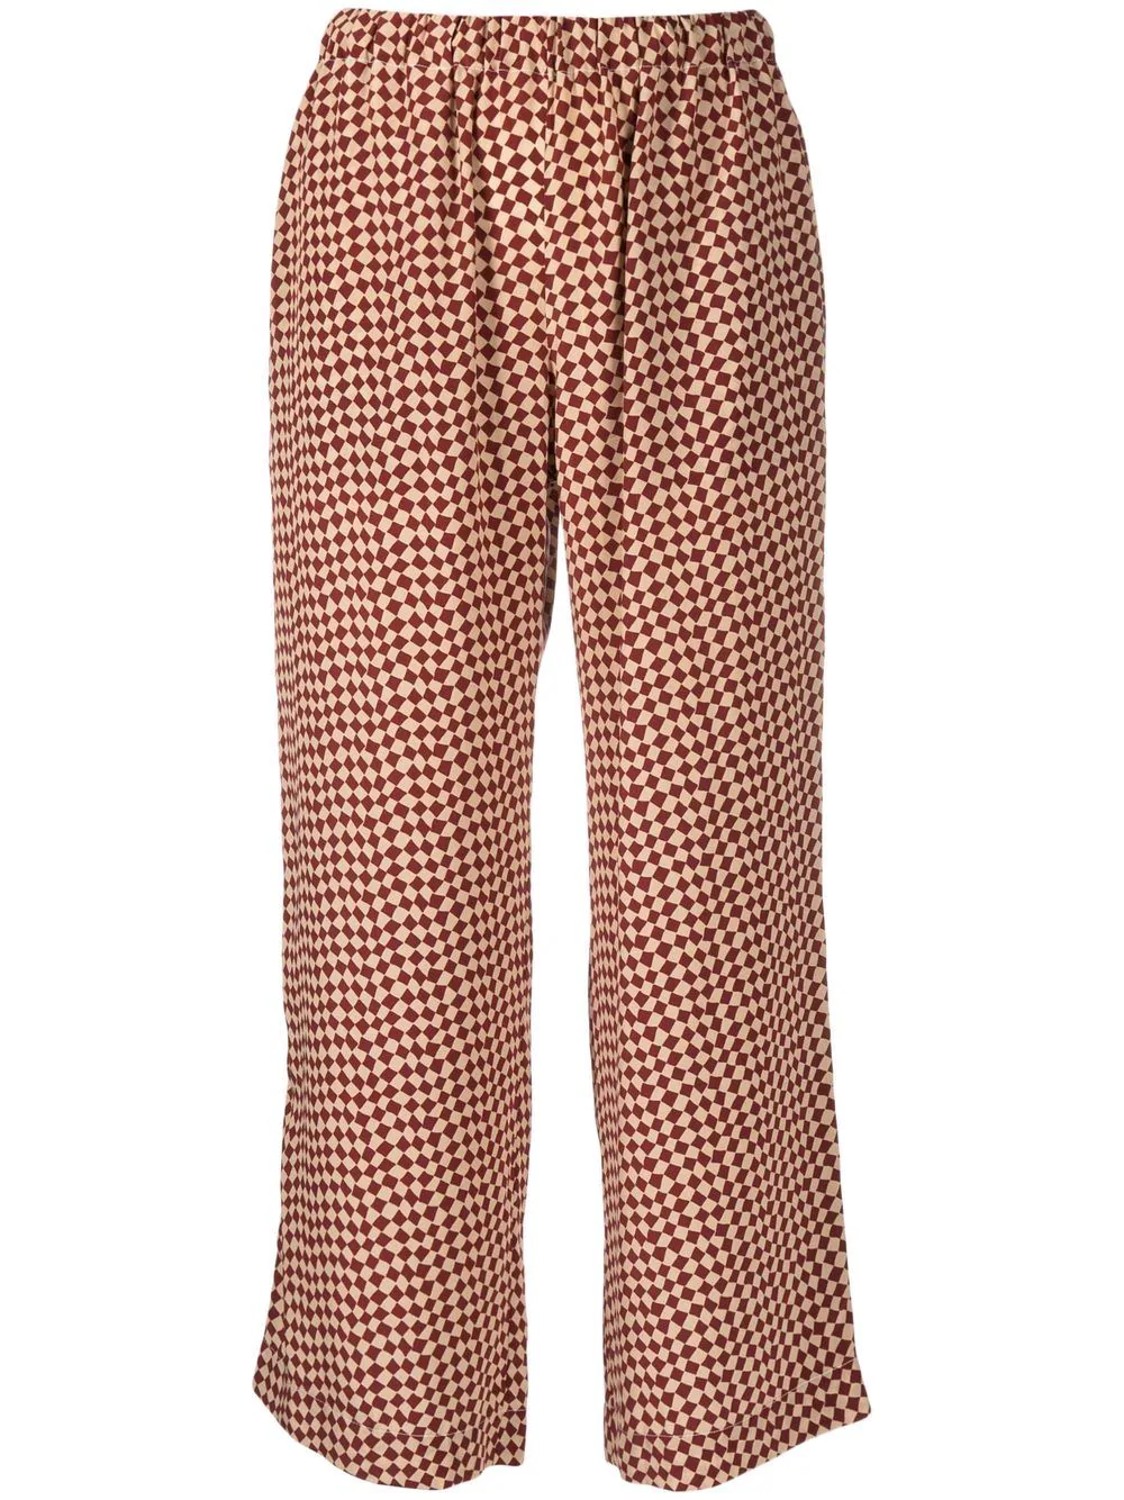 shop Marni  Pantaloni: Pantaloni Marni, modello cropped, elastico in vita, fit morbido.

Composizione: 100% seta. number 2303